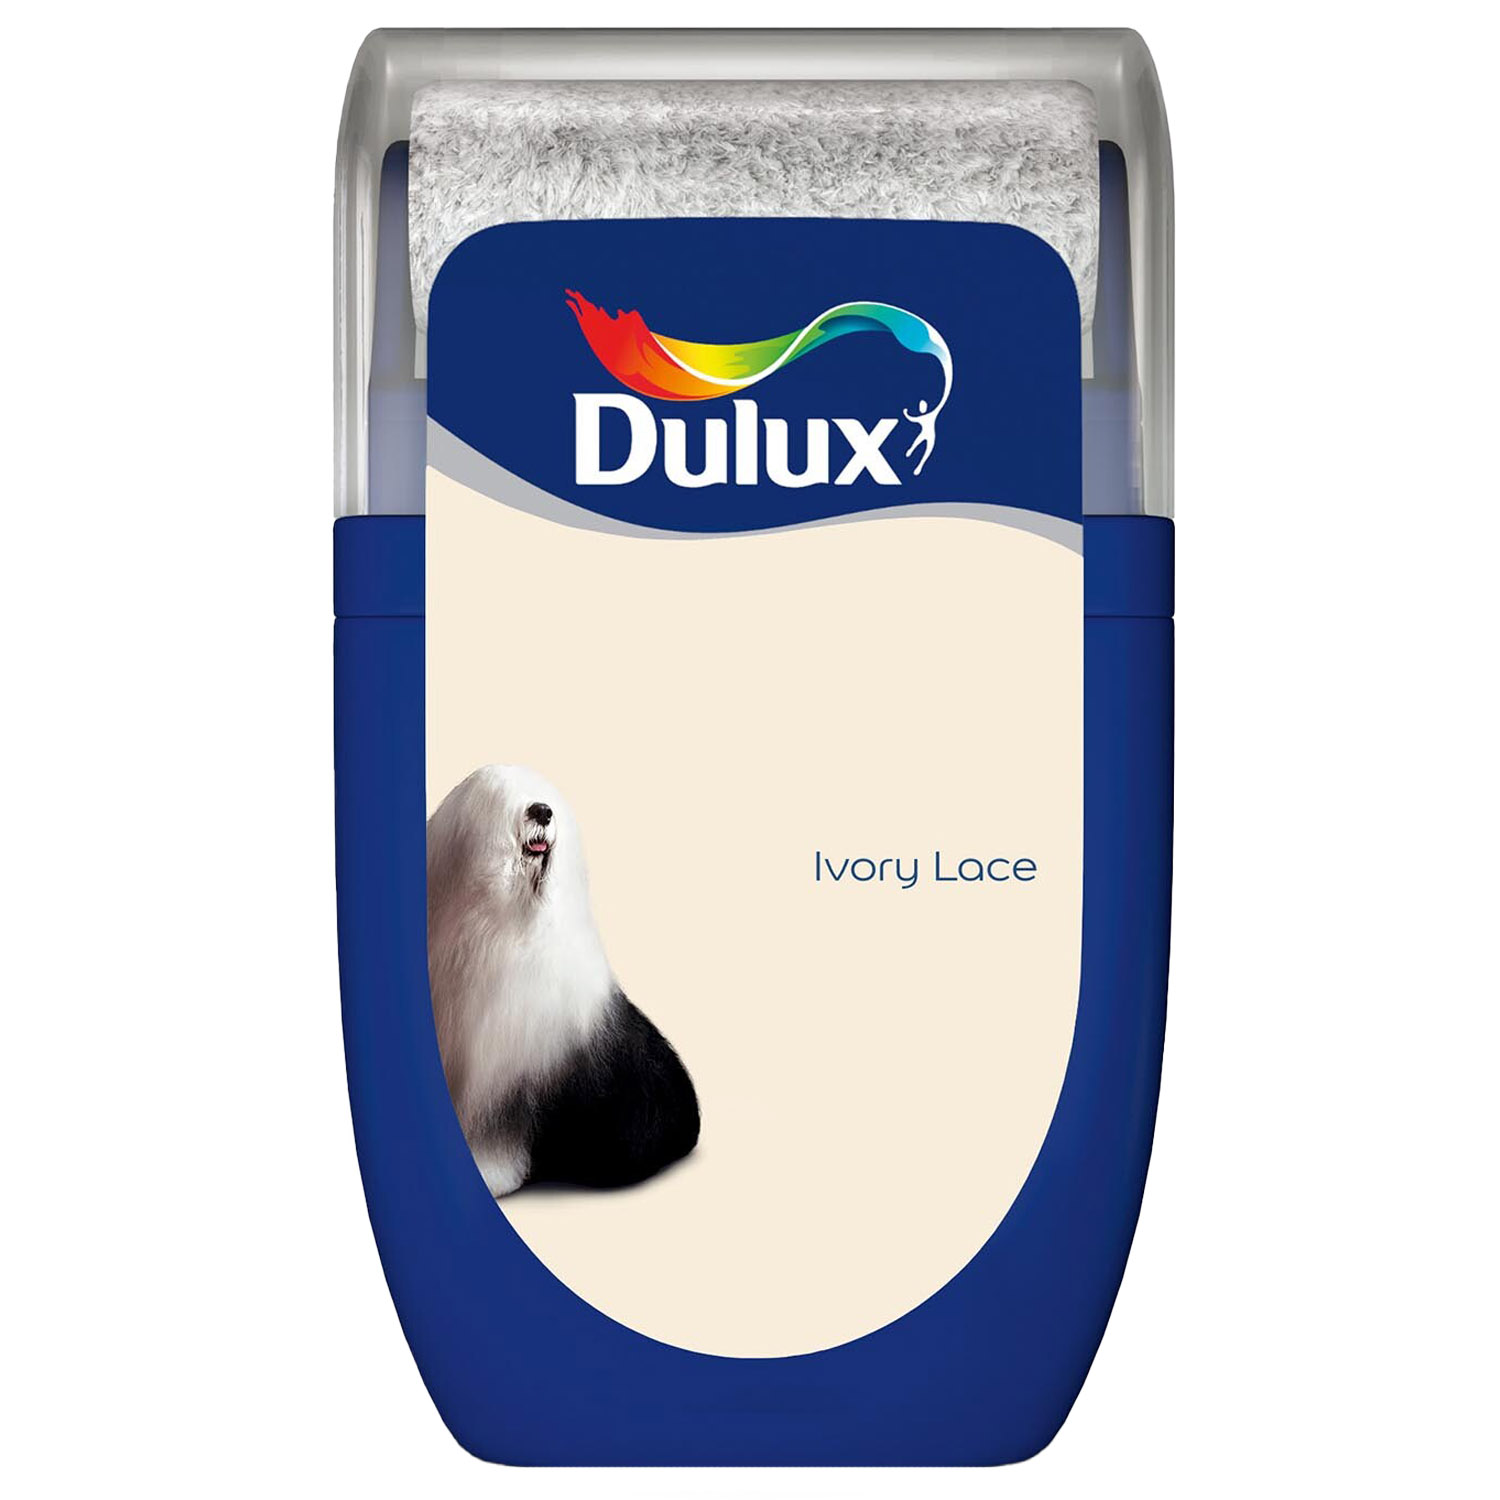 Dulux Ivory Lace Matt Emulsion Paint Tester Pot 30ml Image 1